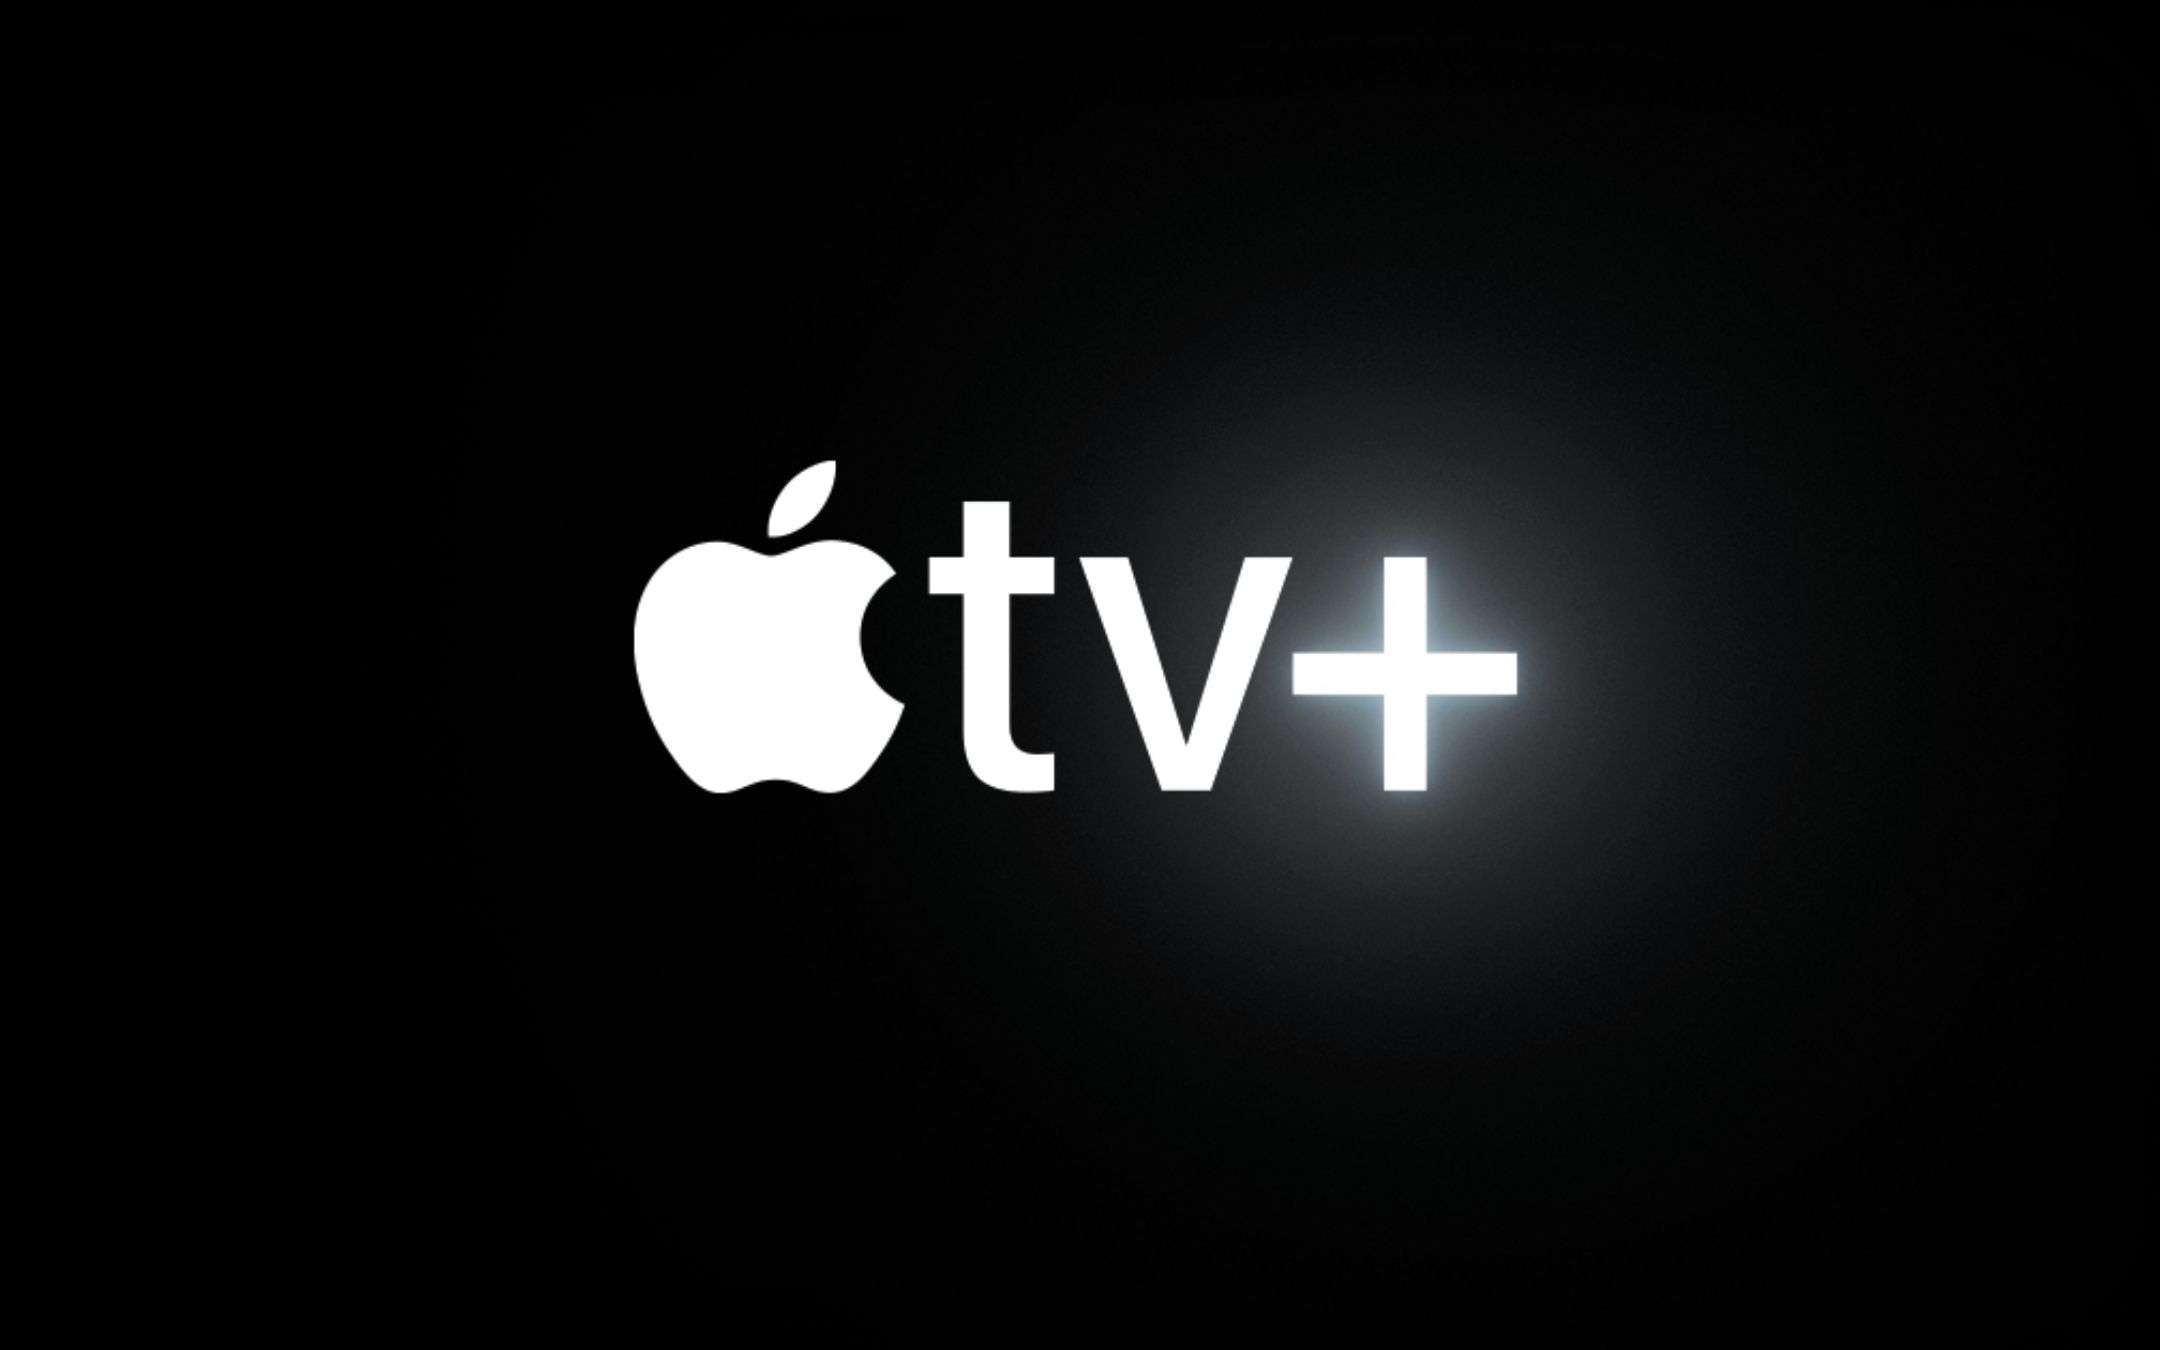 Apple TV+: gli abbonati sono TROPPO POCHI rispetto ai competitor